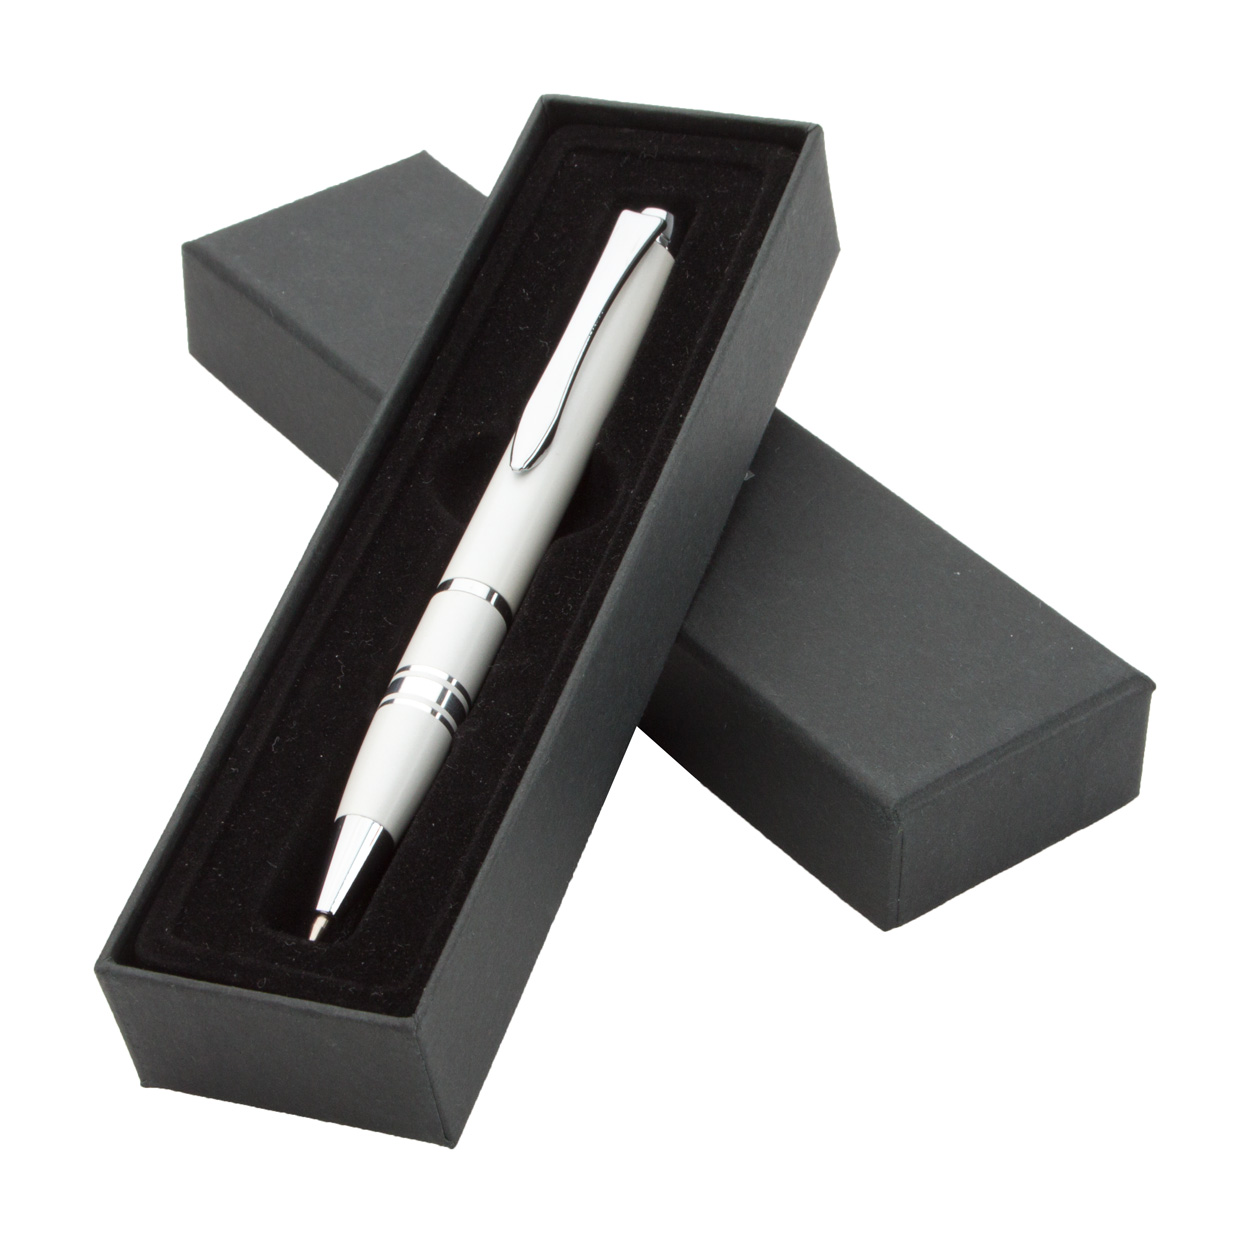 Saturn ballpoint pen